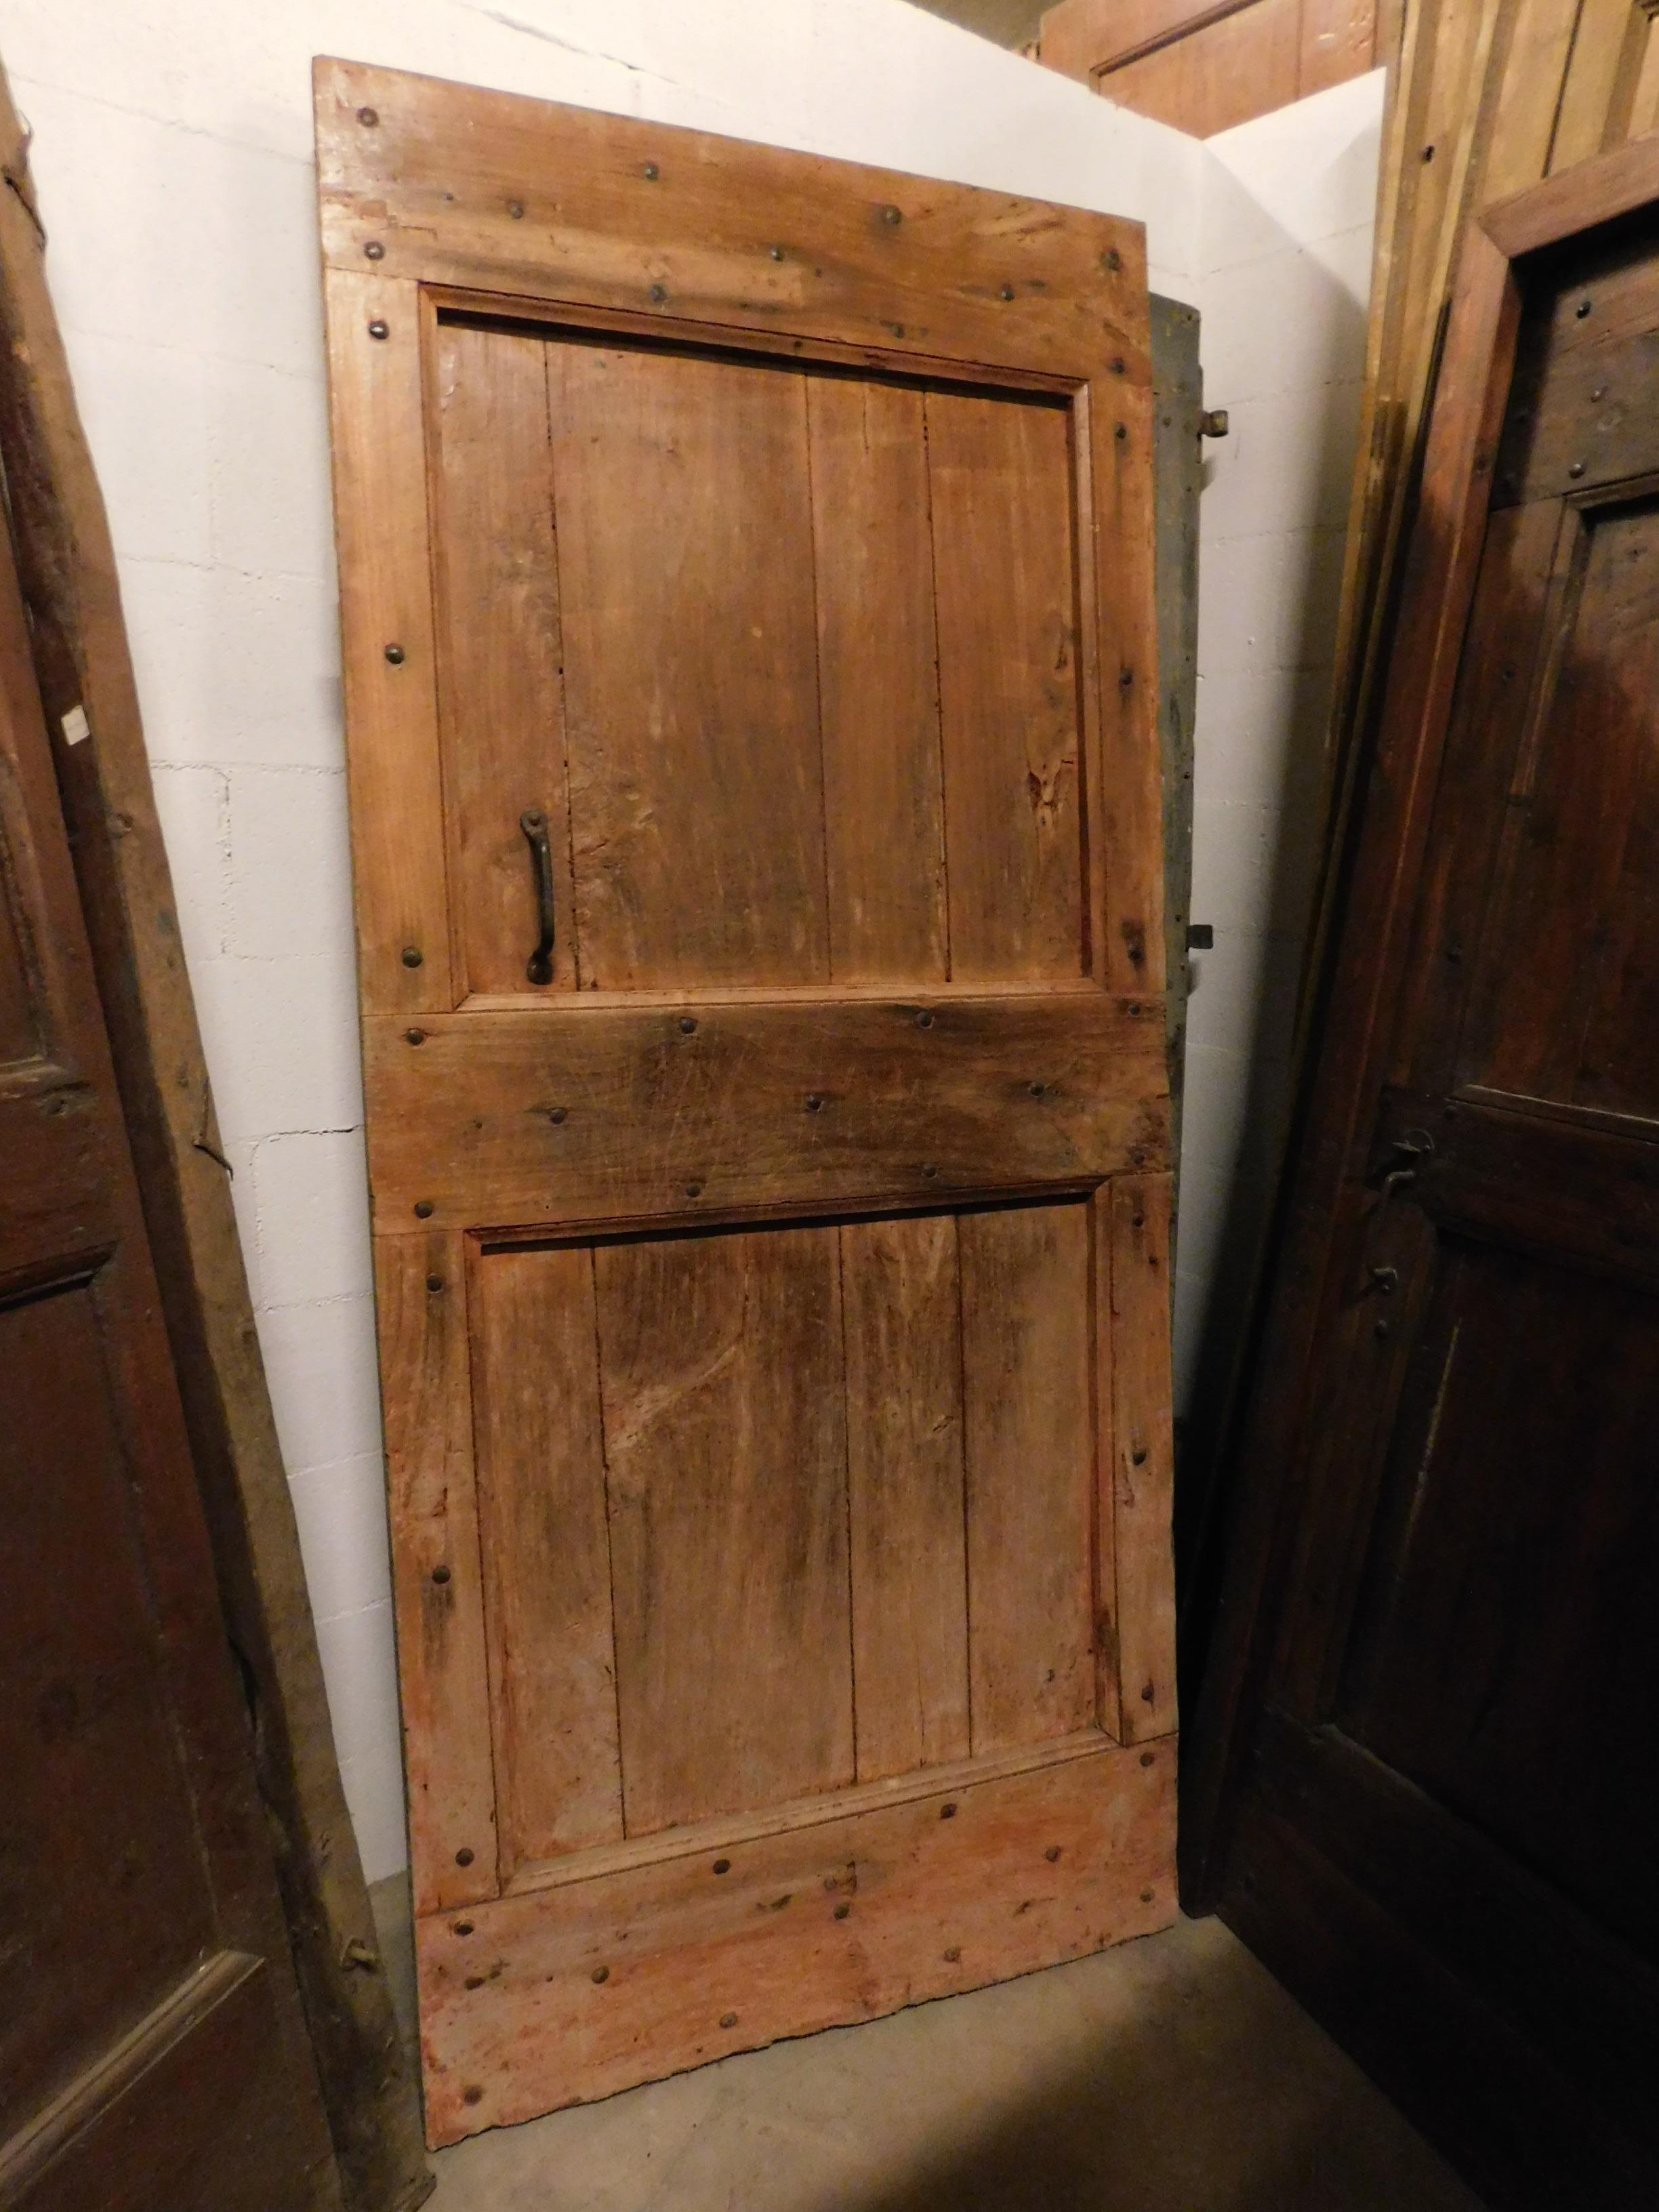 Antike rustikale Tür aus Pappelholz, die Farbe des hellen Pappelholzes tendiert zu Orange, schönes patiniertes Holz aus dem 19. Jahrhundert, handgefertigt für ein Bauernhaus in Norditalien.
Es wurde als Kellertür geboren, mit Original-Öffnung und